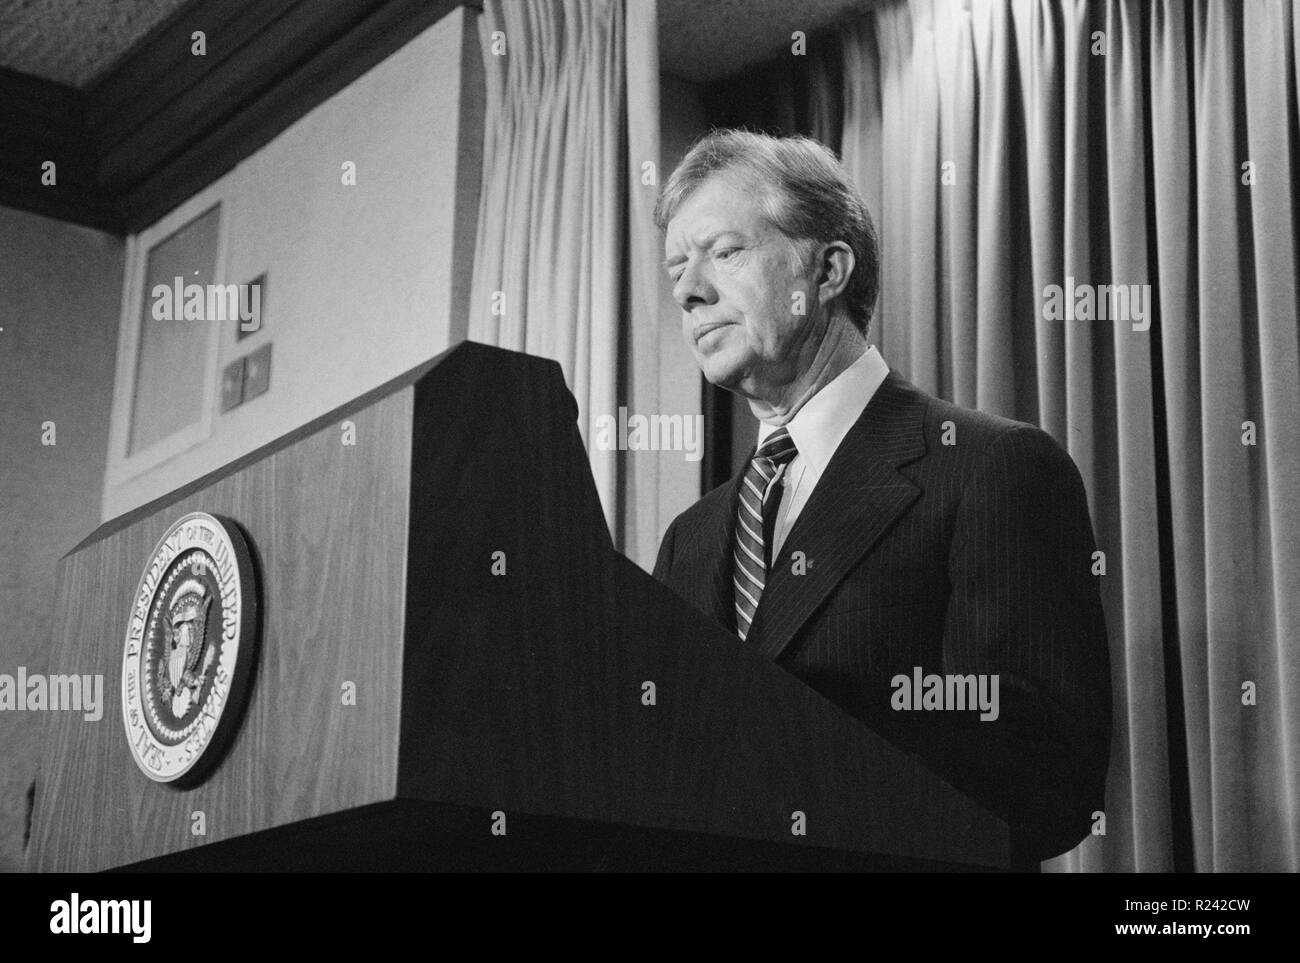 Foto von Präsident Jimmy Carter kündigt neue Sanktionen gegen den Iran nach der amerikanischen Geiselnahme. Fotografiert von Marion S. Trikosko. Datierte 1980 Stockfoto